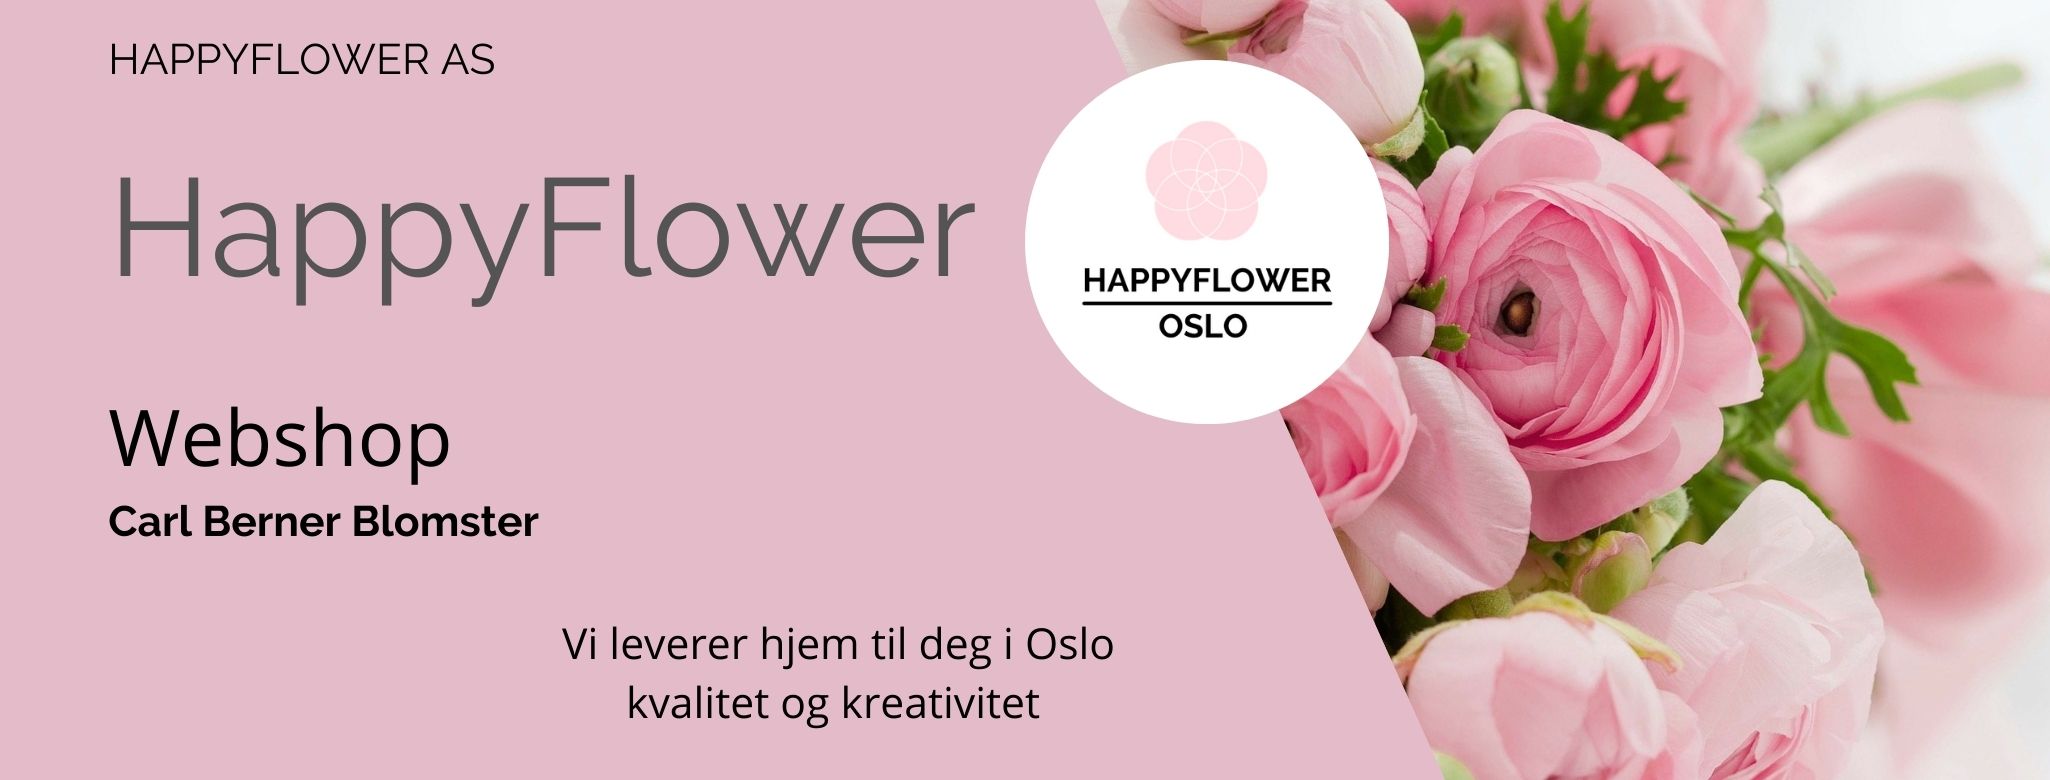 Happyflower AS : Carl Berners Blomster